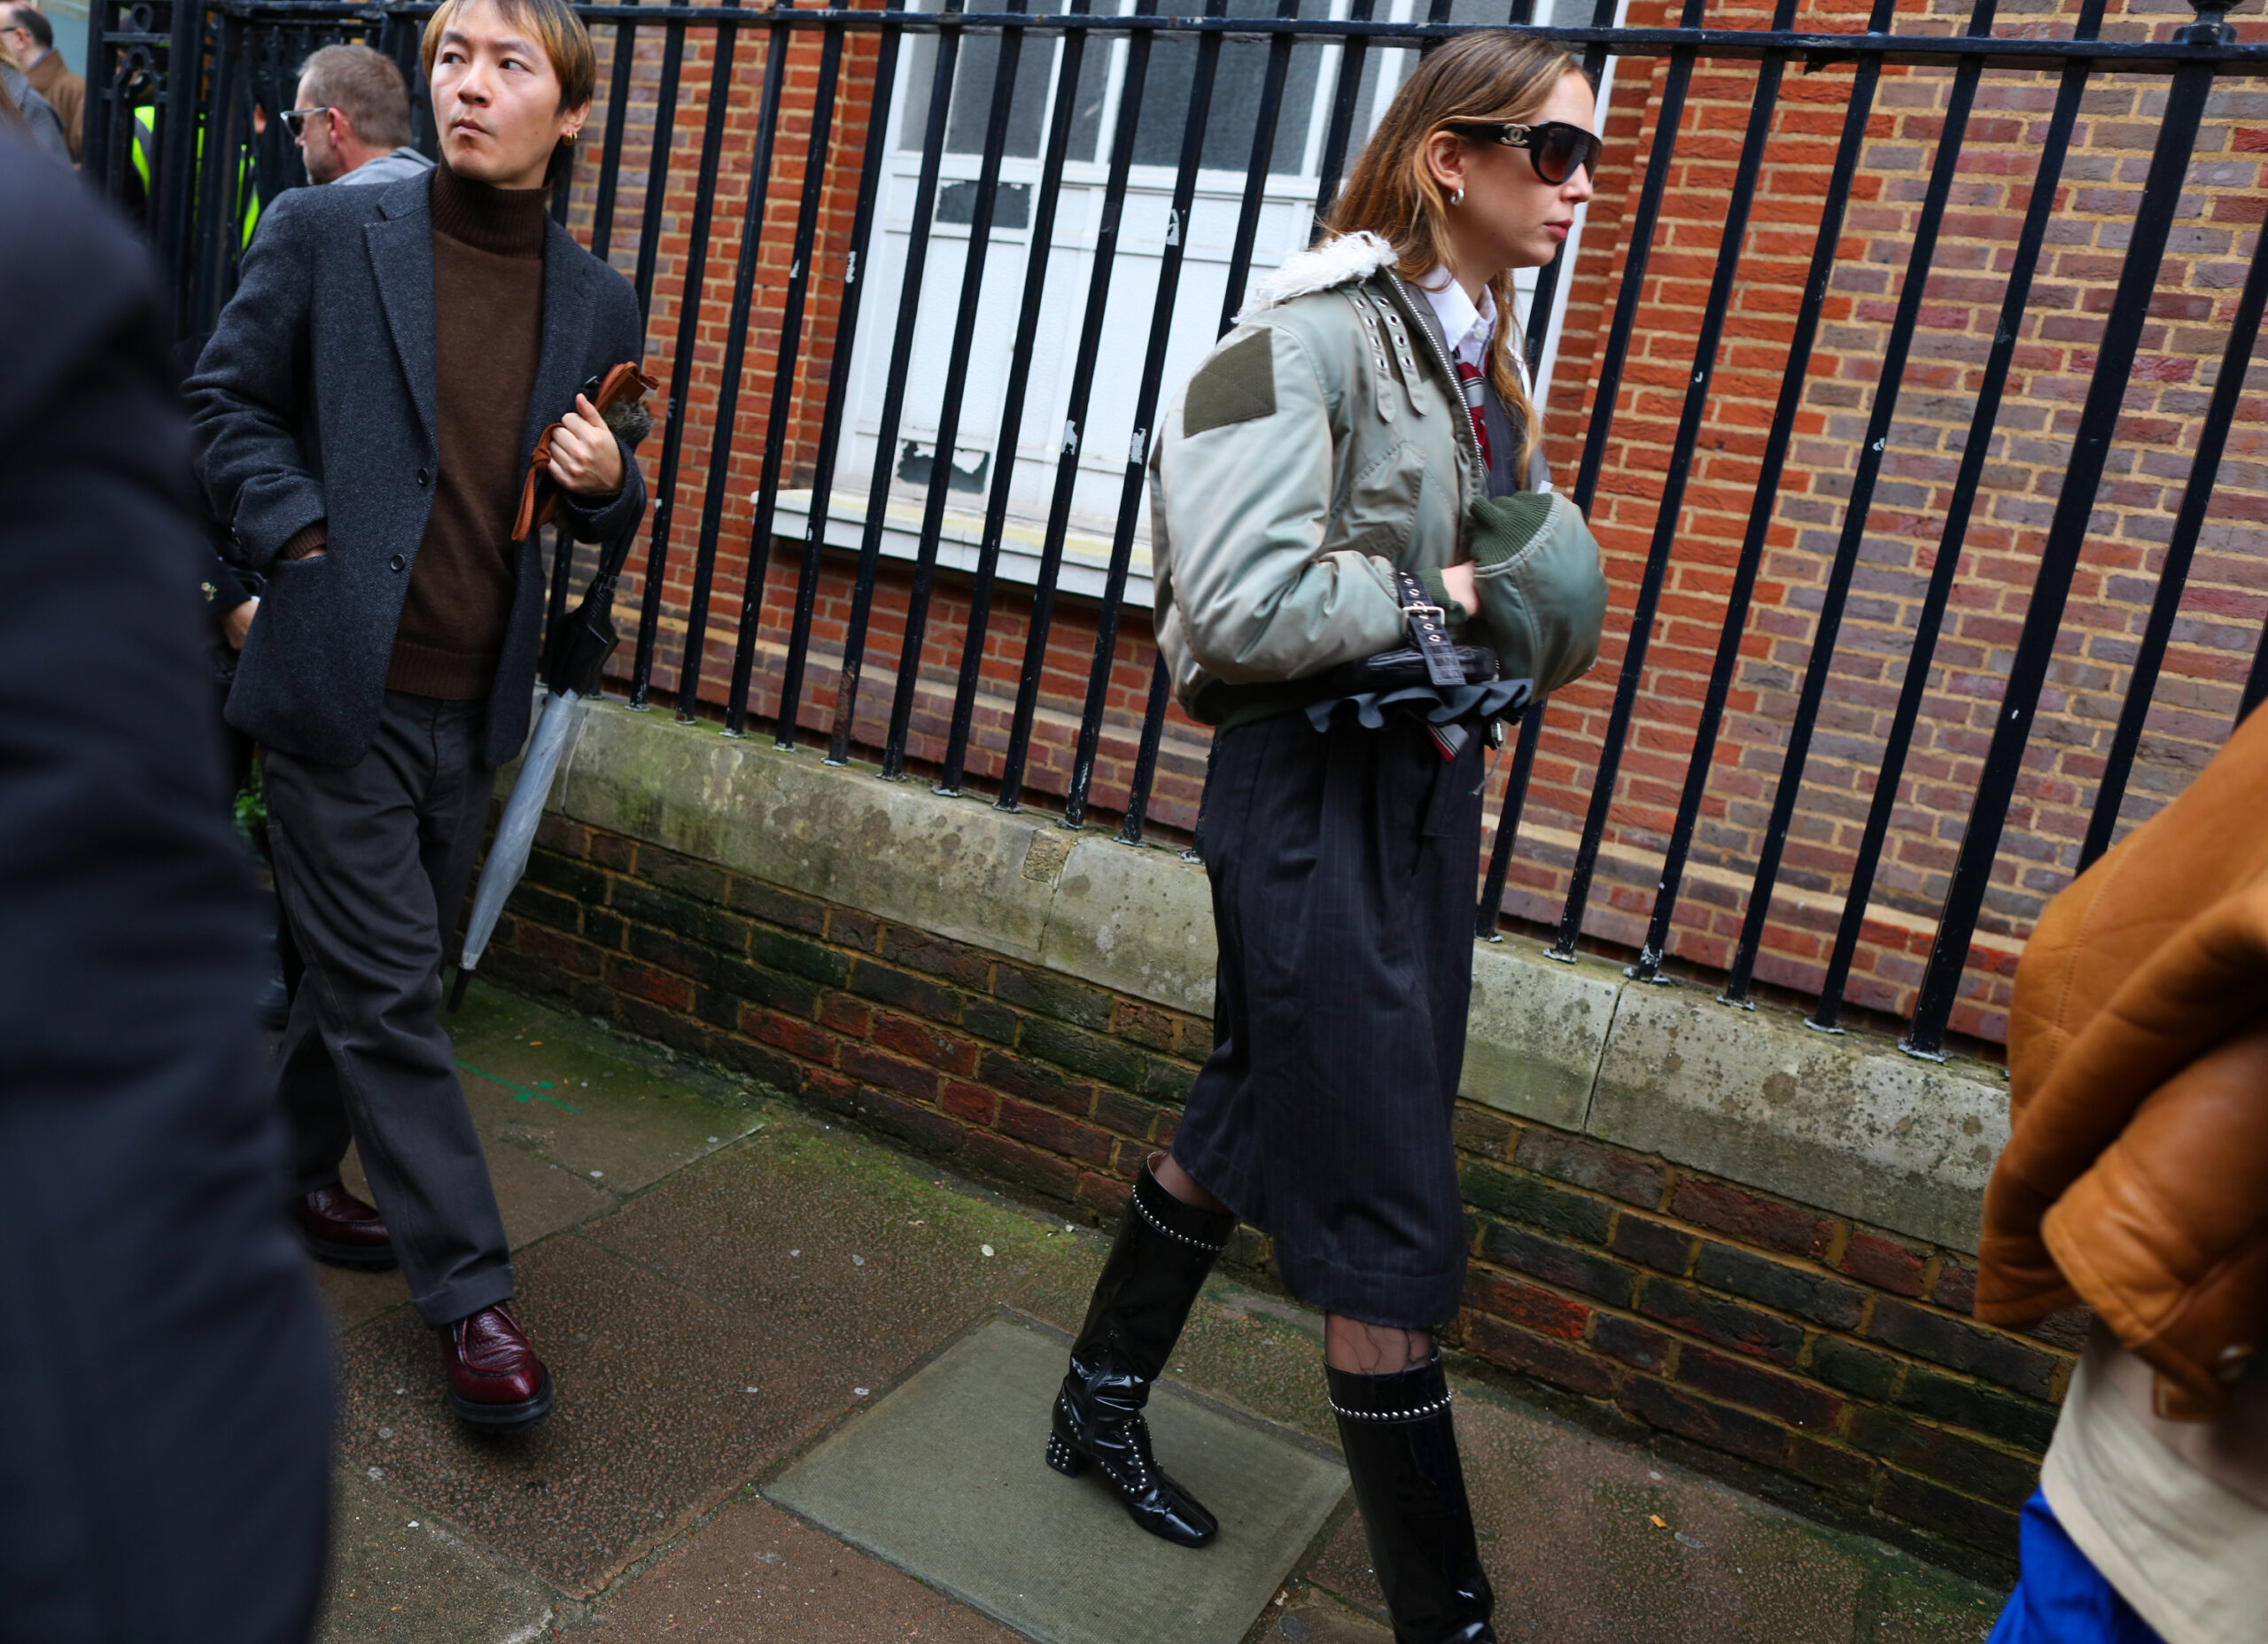 εβδομάδα μόδας λονδίνου: οι ωραιότερες street style εμφανίσεις